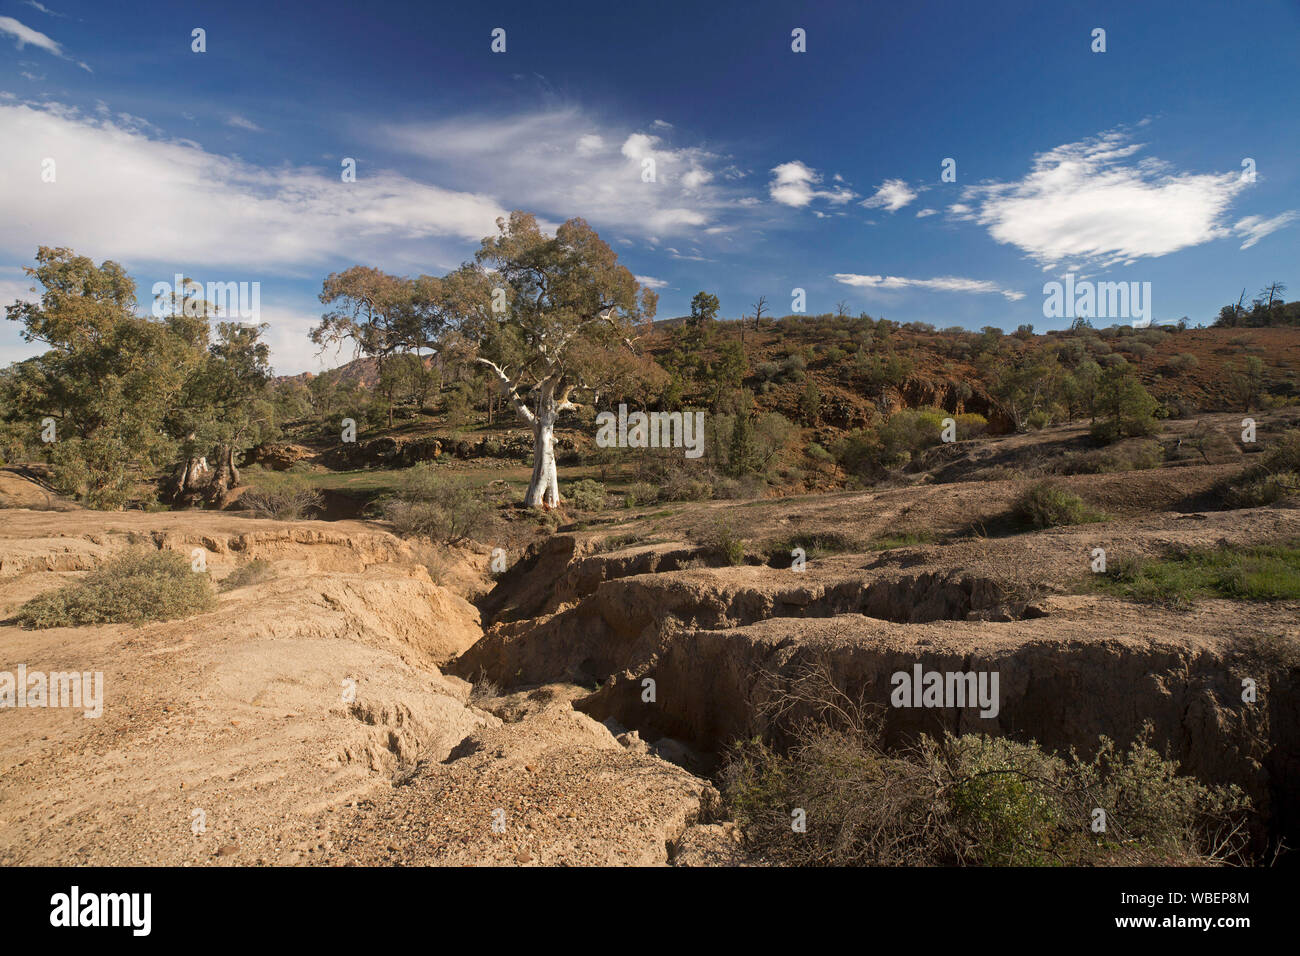 Paesaggio con profonda e fessure aperte attraverso la terra ai piedi delle colline basse a causa di erosione da acqua, Flinders Ranges National Park in Australia Foto Stock